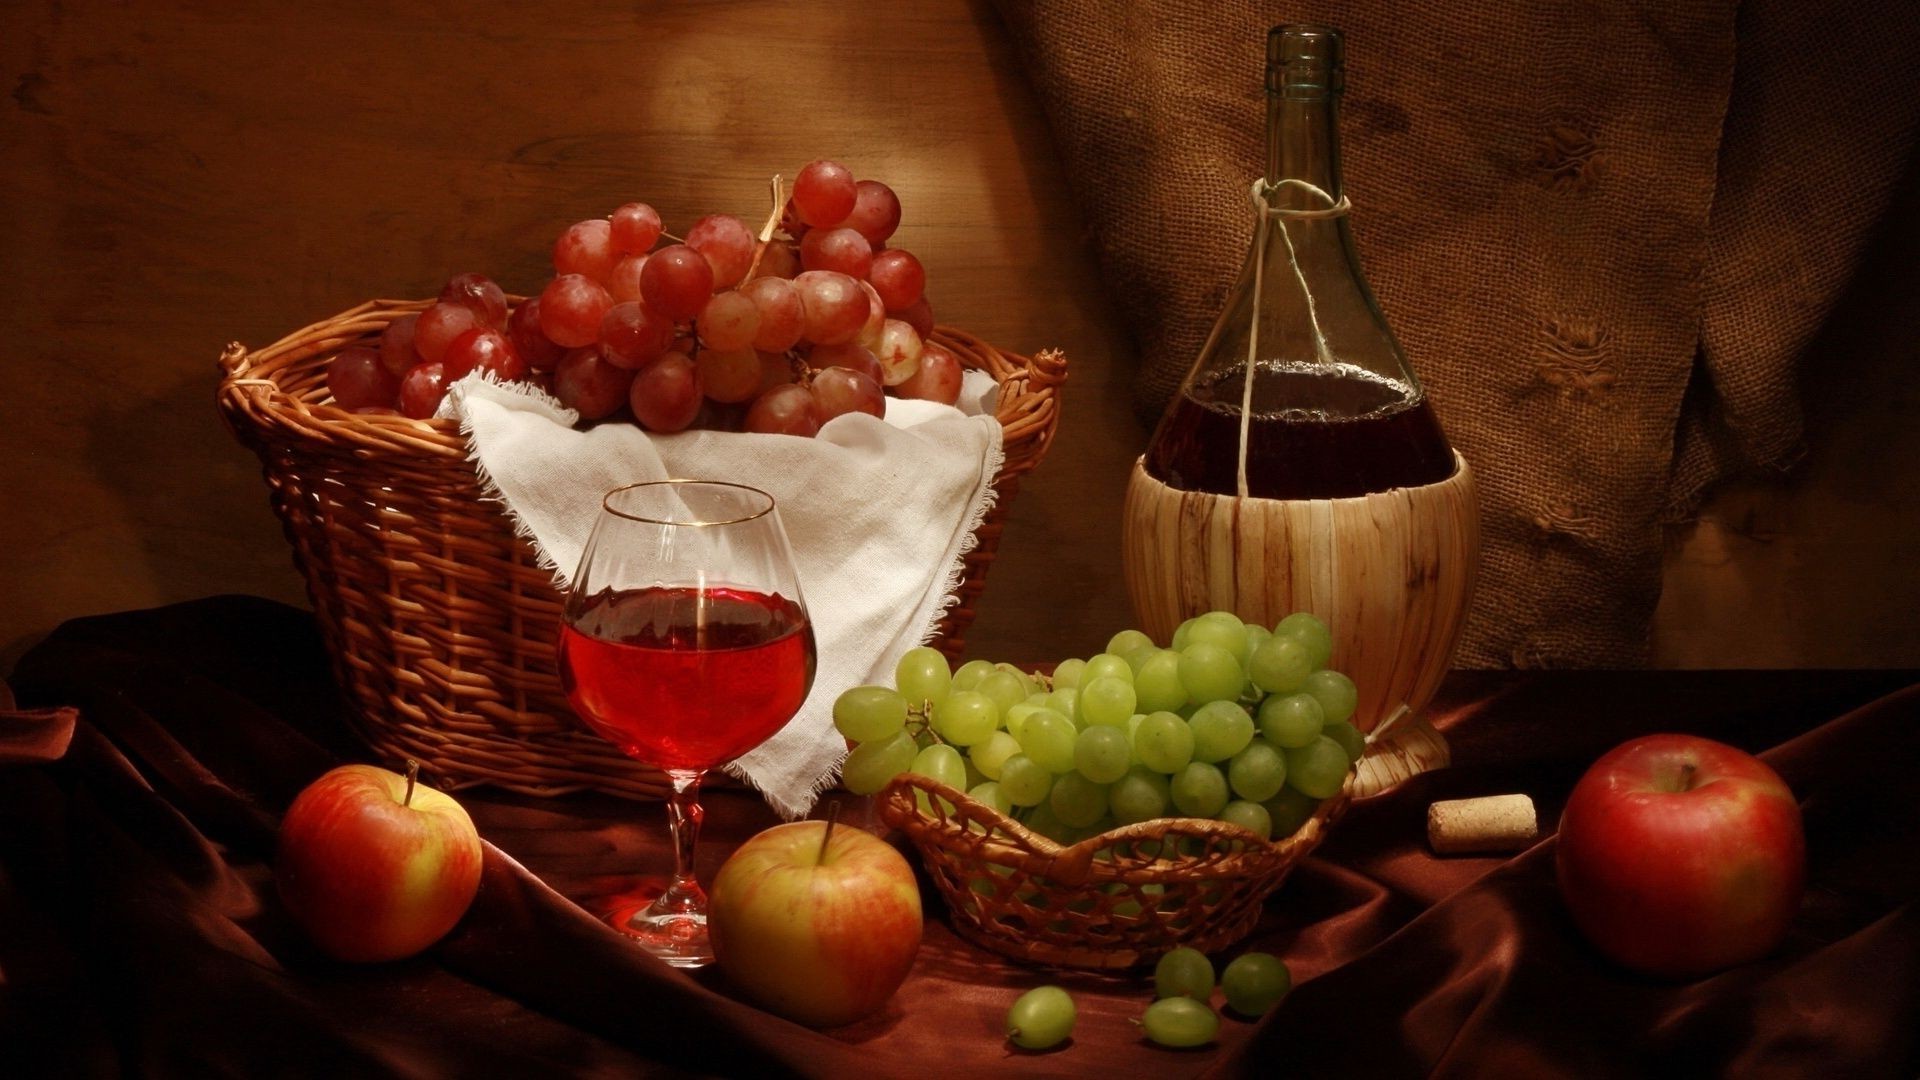 food & drink wine fruit still life food grape glass drink basket fall apple wood vine wooden bottle berry rustic grow wicker table